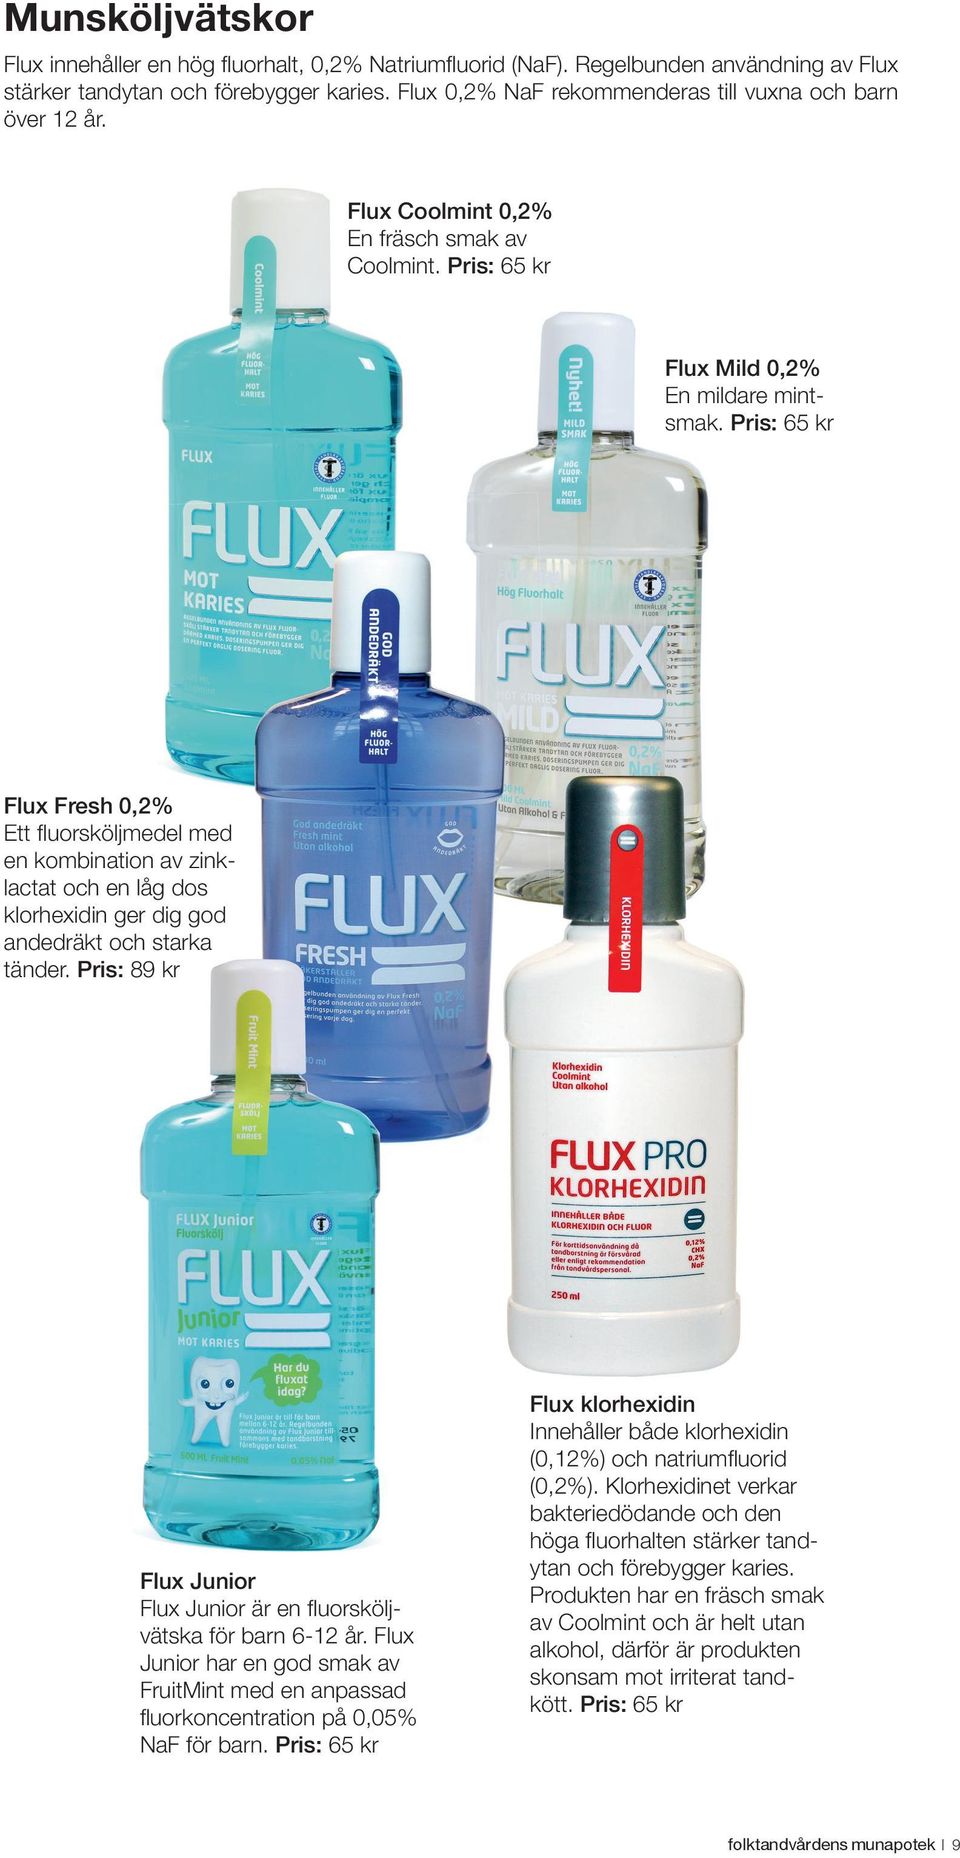 Pris: 65 kr Flux Fresh 0,2% Ett fluorsköljmedel med en kombination av zinklactat och en låg dos klorhexidin ger dig god andedräkt och starka tänder.